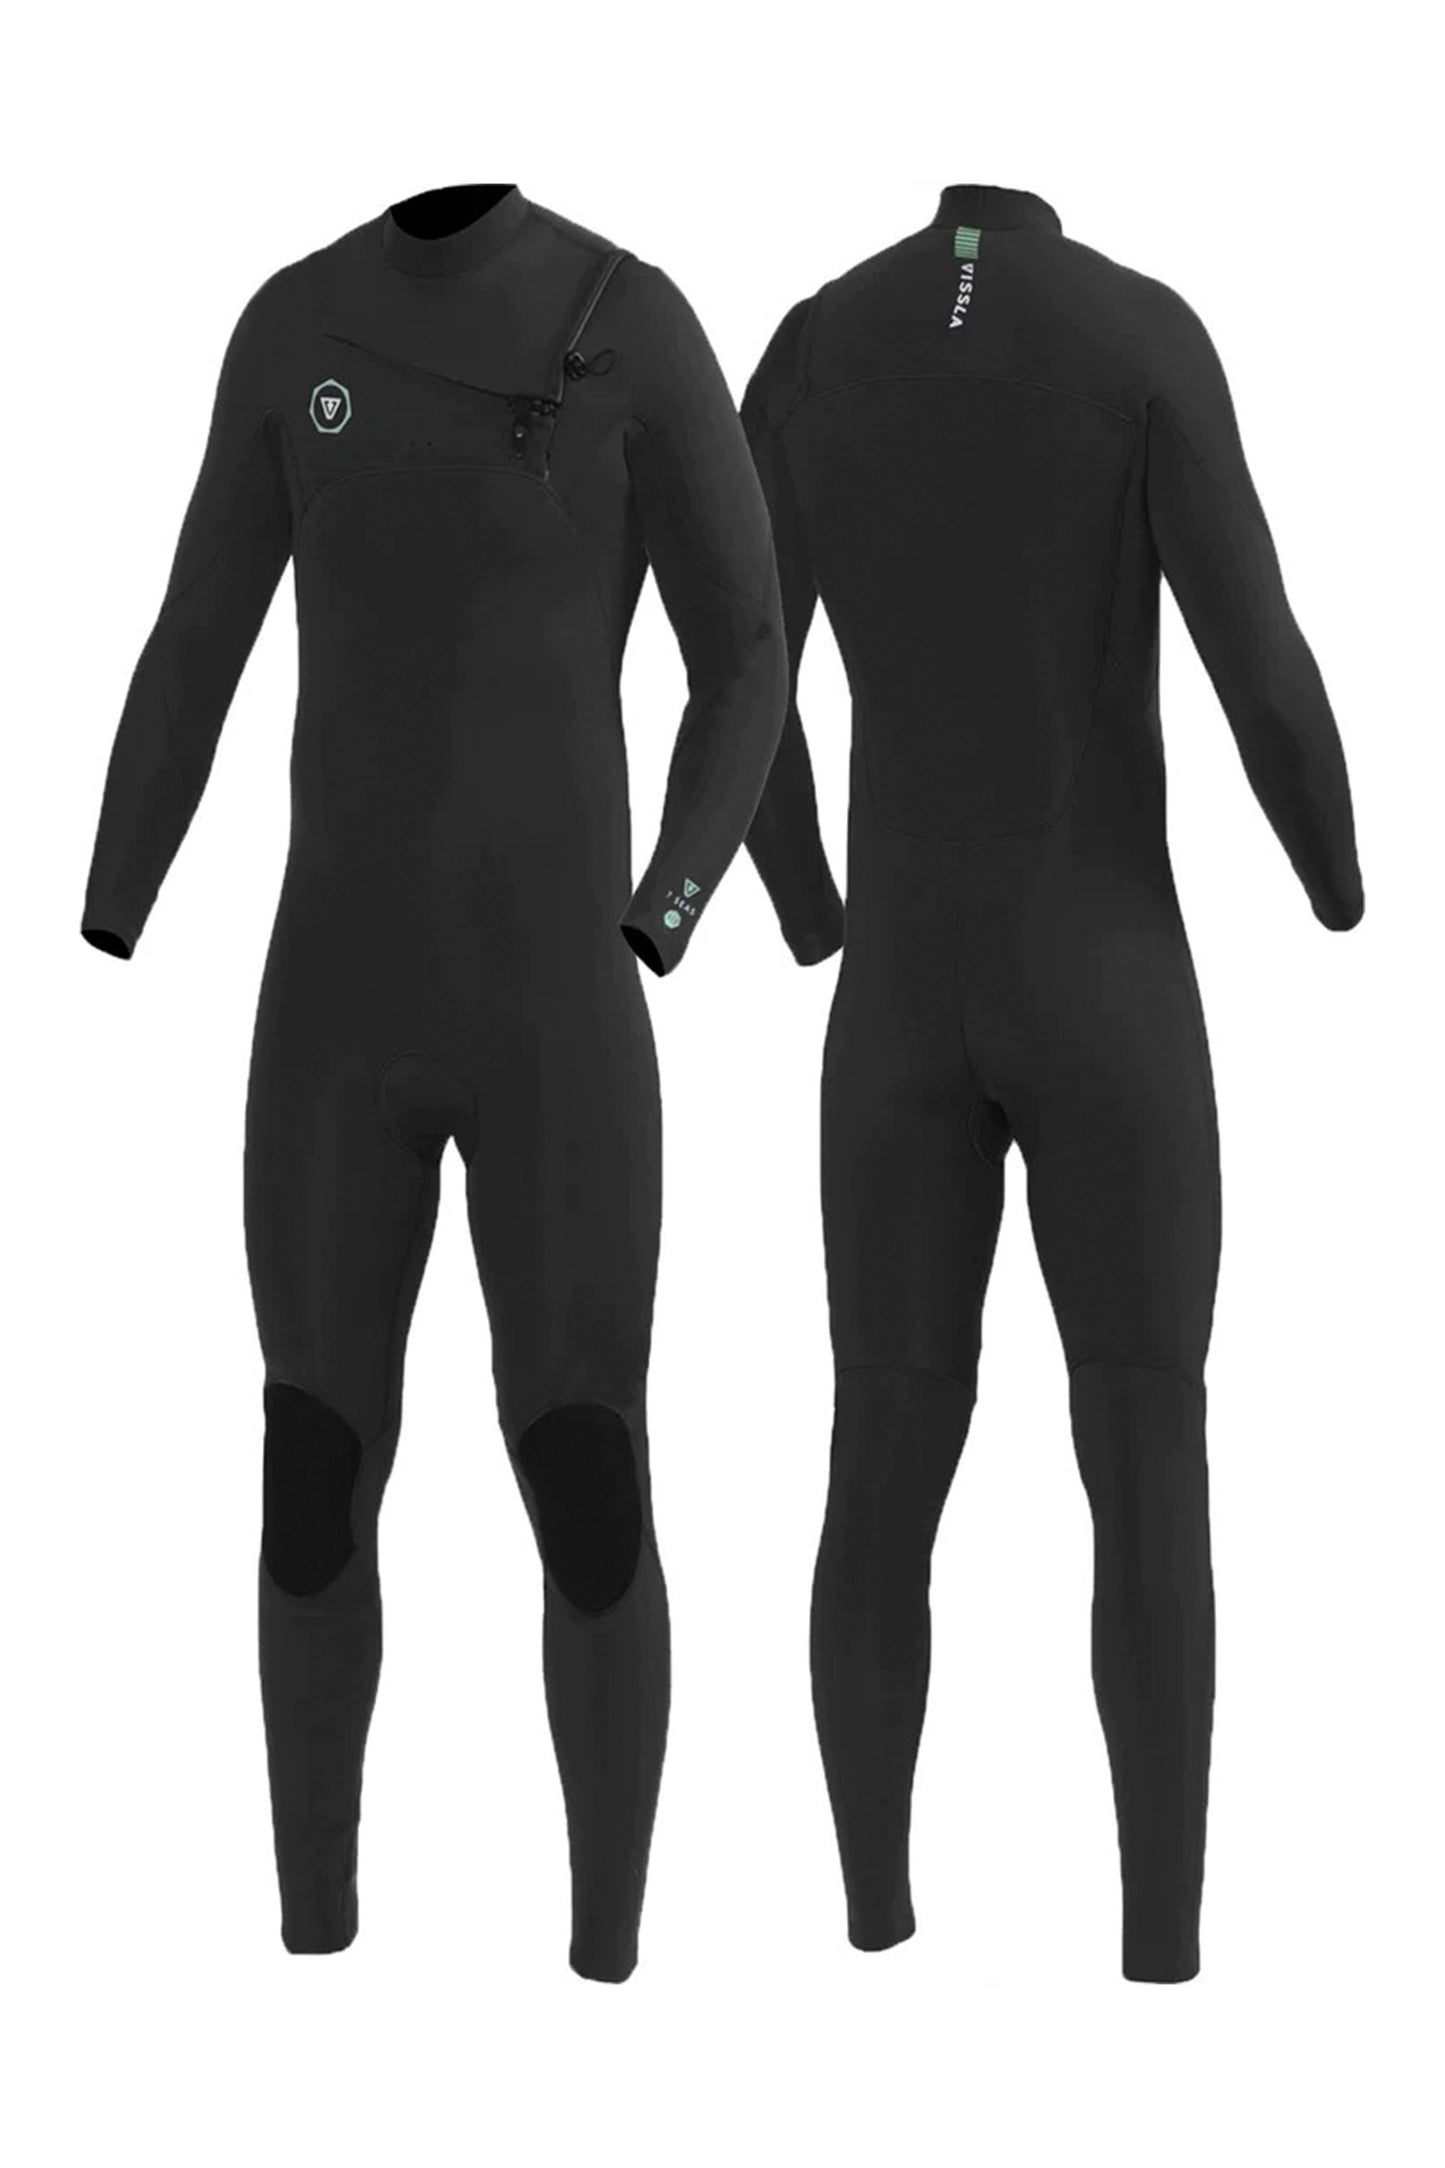       Pukas-Surf-Shop-vissla-wetsuit-Seven-Seas---5-4mm---Chest-Zip-blk